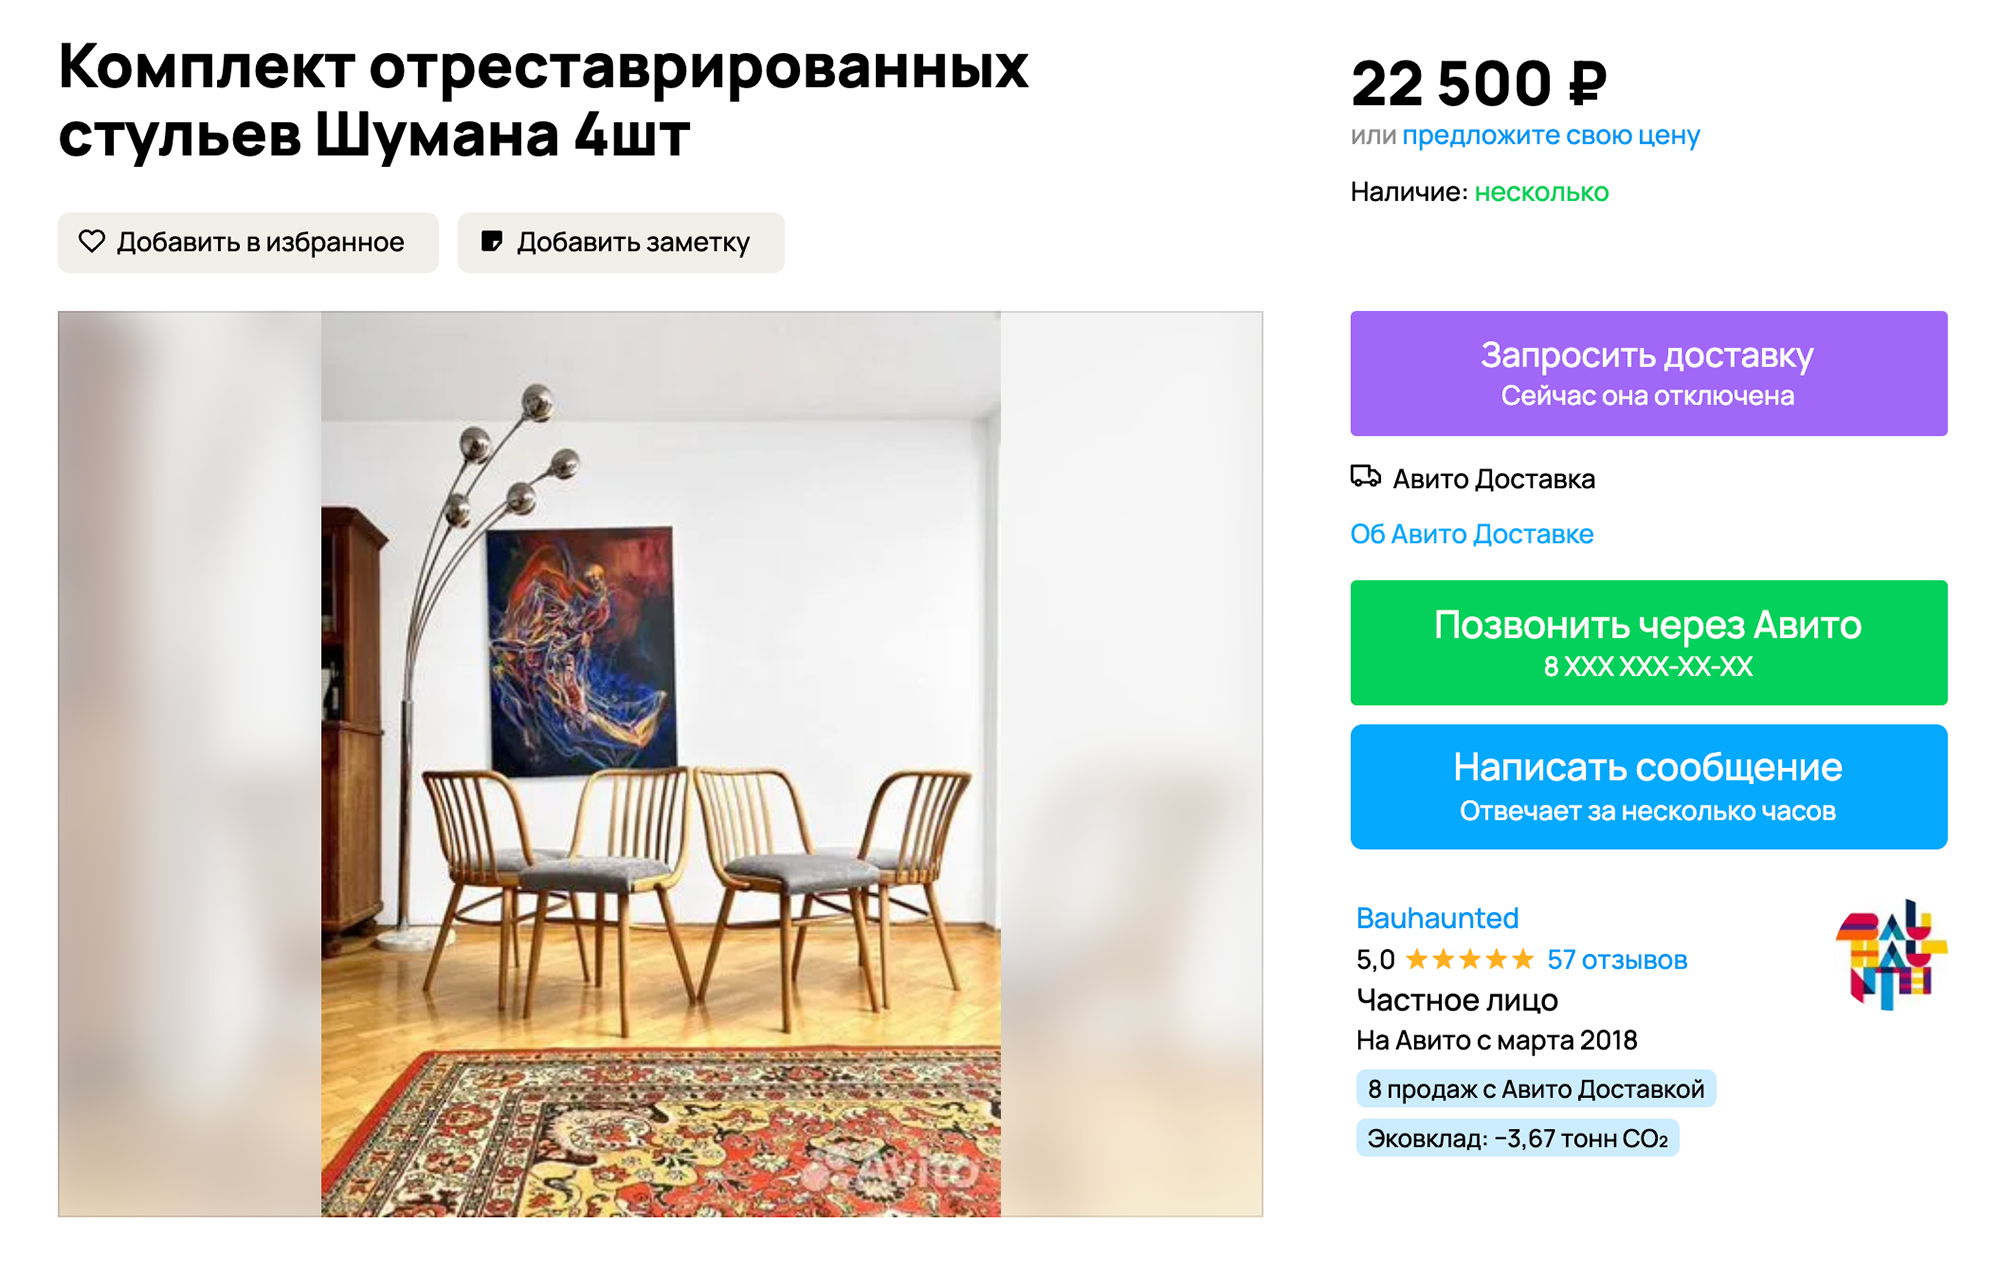 Оригинальные отреставрированные стулья можно найти на «Авито». Эти продаются комплектом. Источник: avito.ru